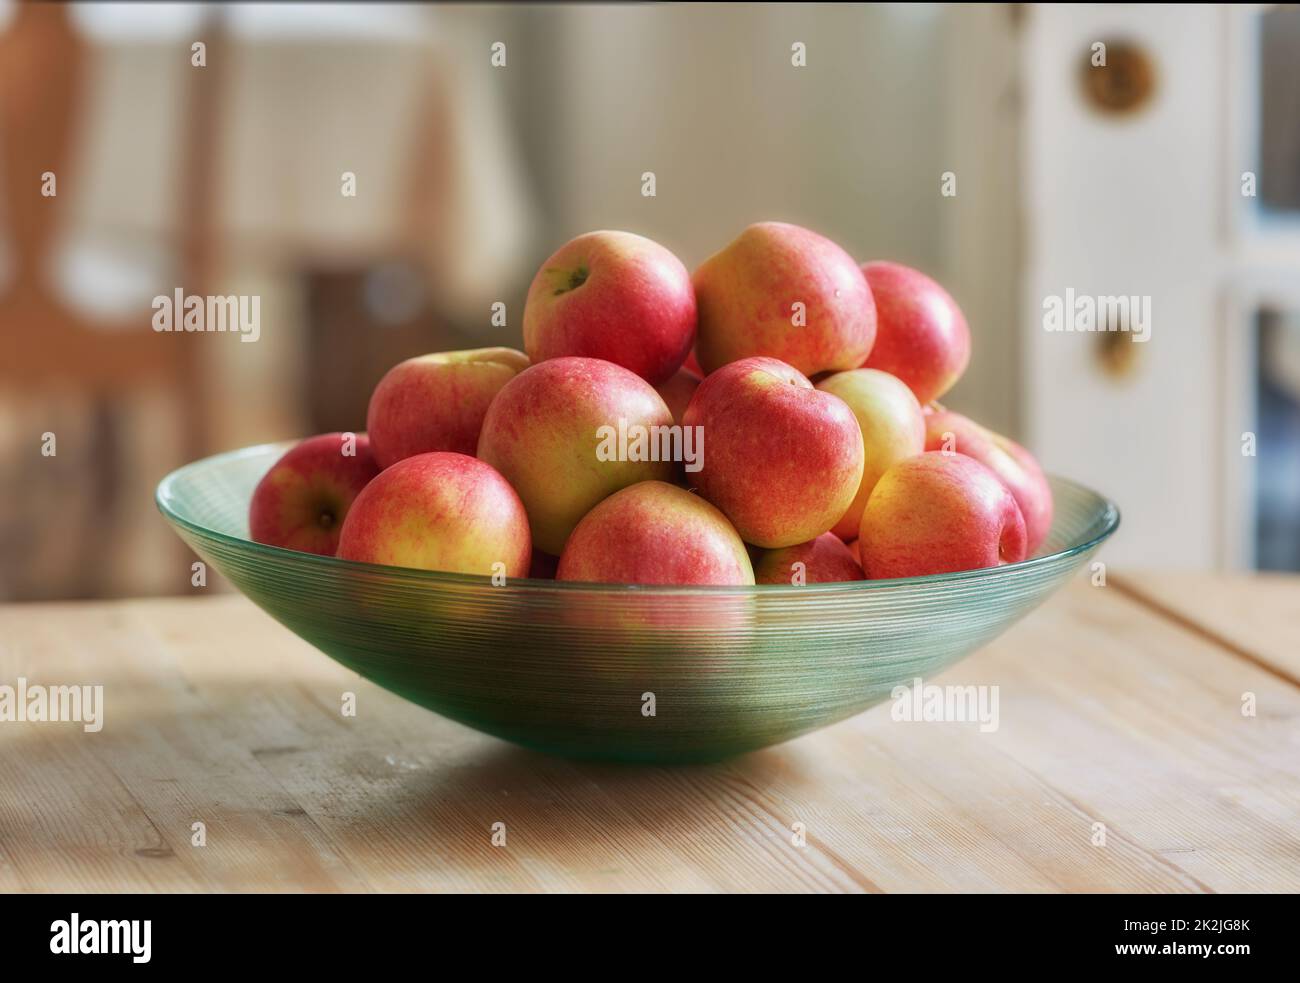 Ein Apfel pro Tag hält den Arzt fern. Glasschüssel mit vielen gesunden Äpfeln - eine wirklich gesunde und verlockende Leckerbissen. Stockfoto